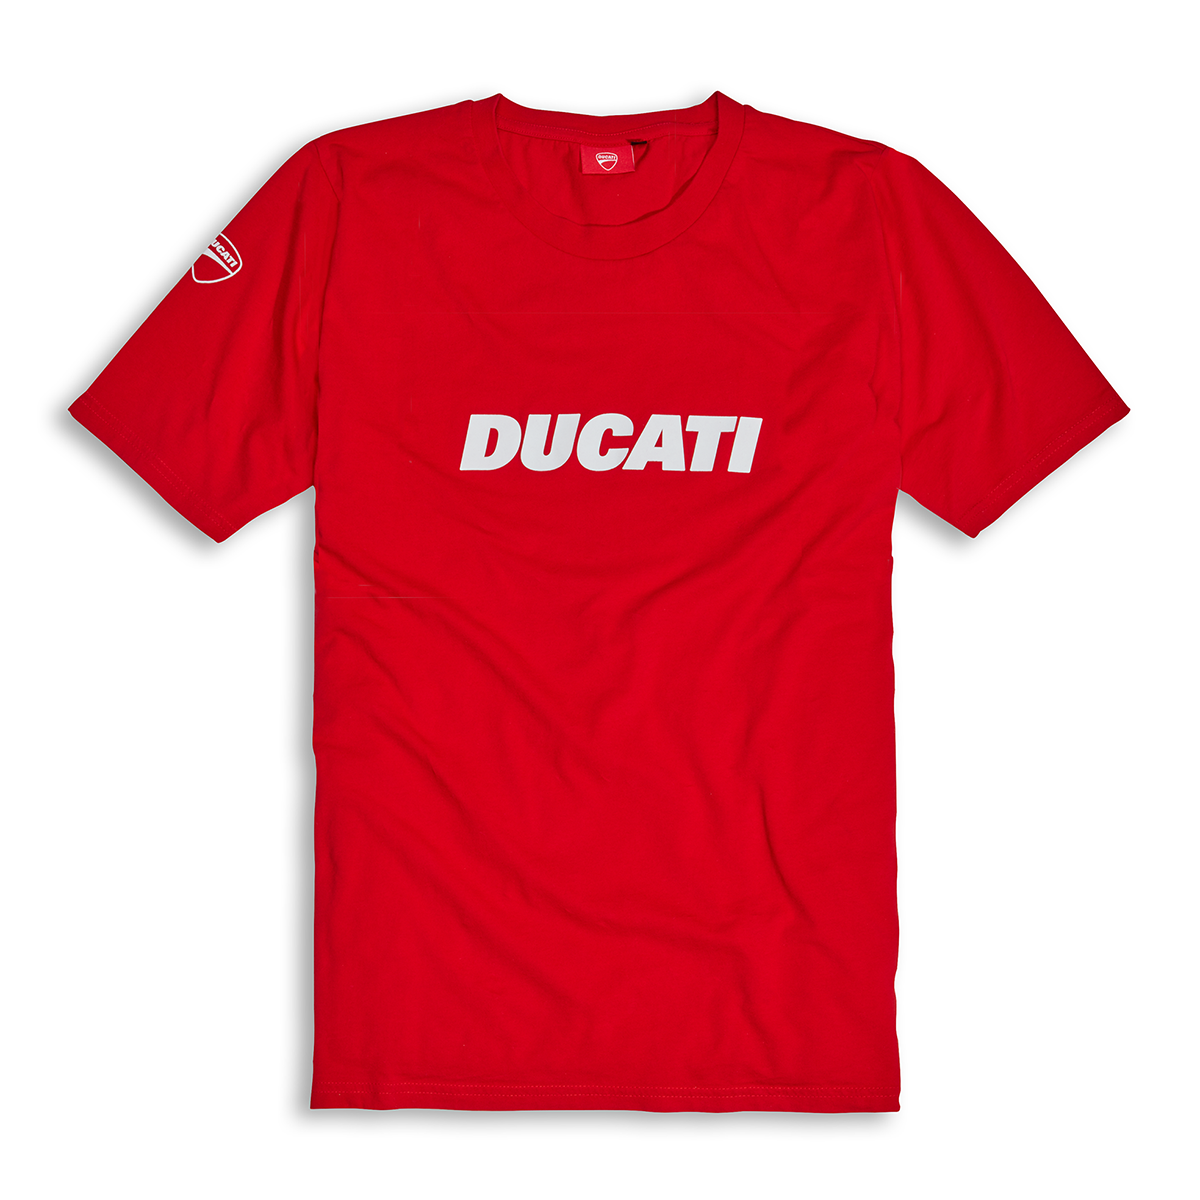 Ducati Ducatiana 2 Men's Tee